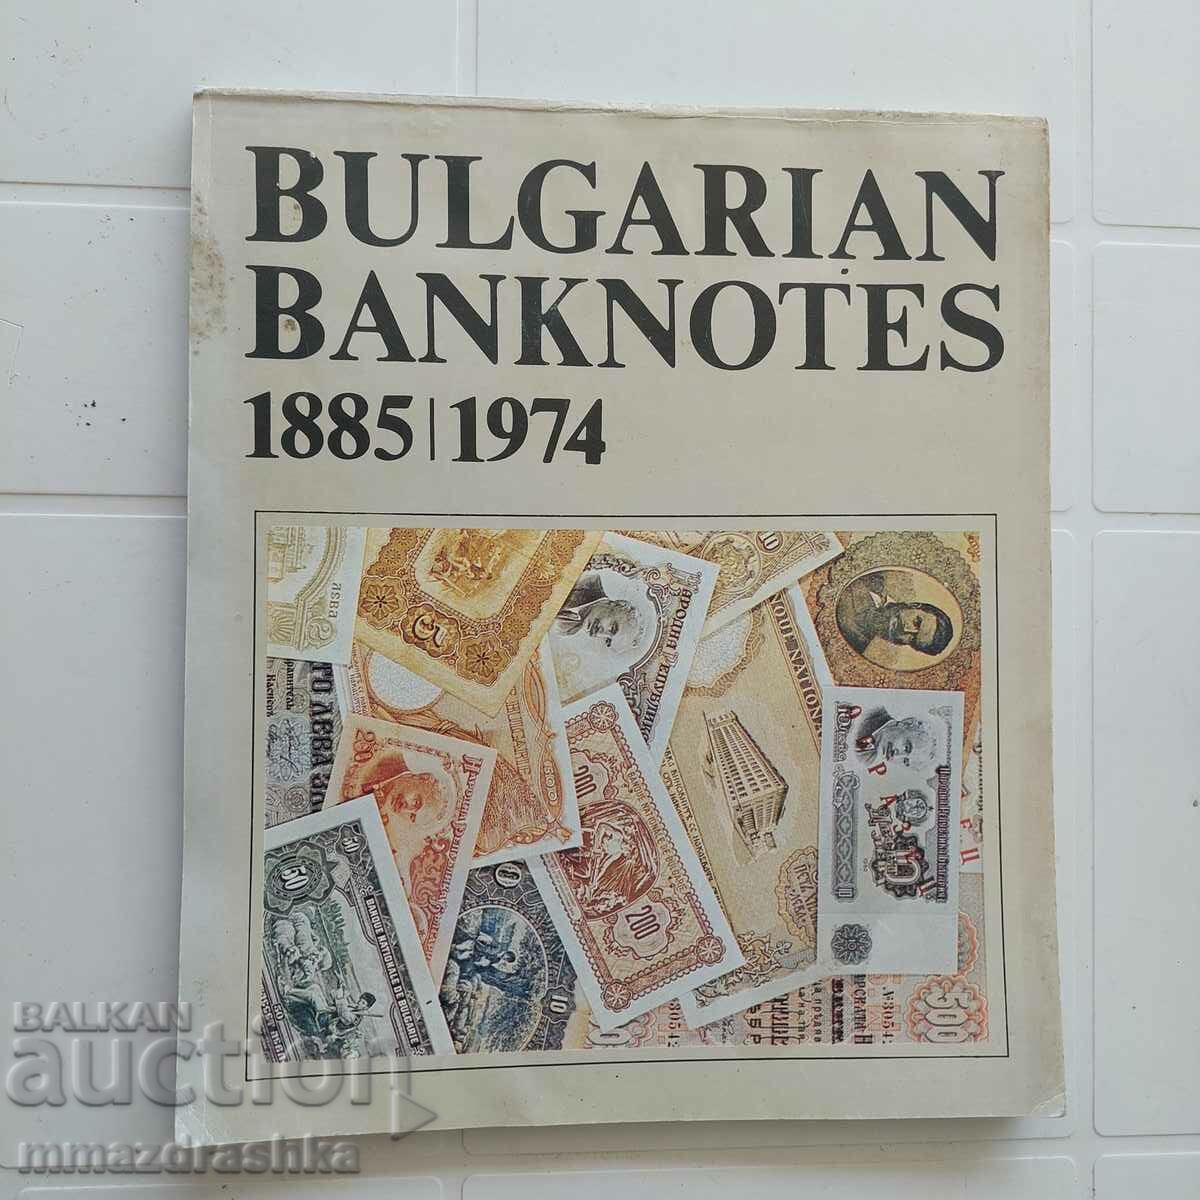 Bulgarian banknotes, 1982 edition